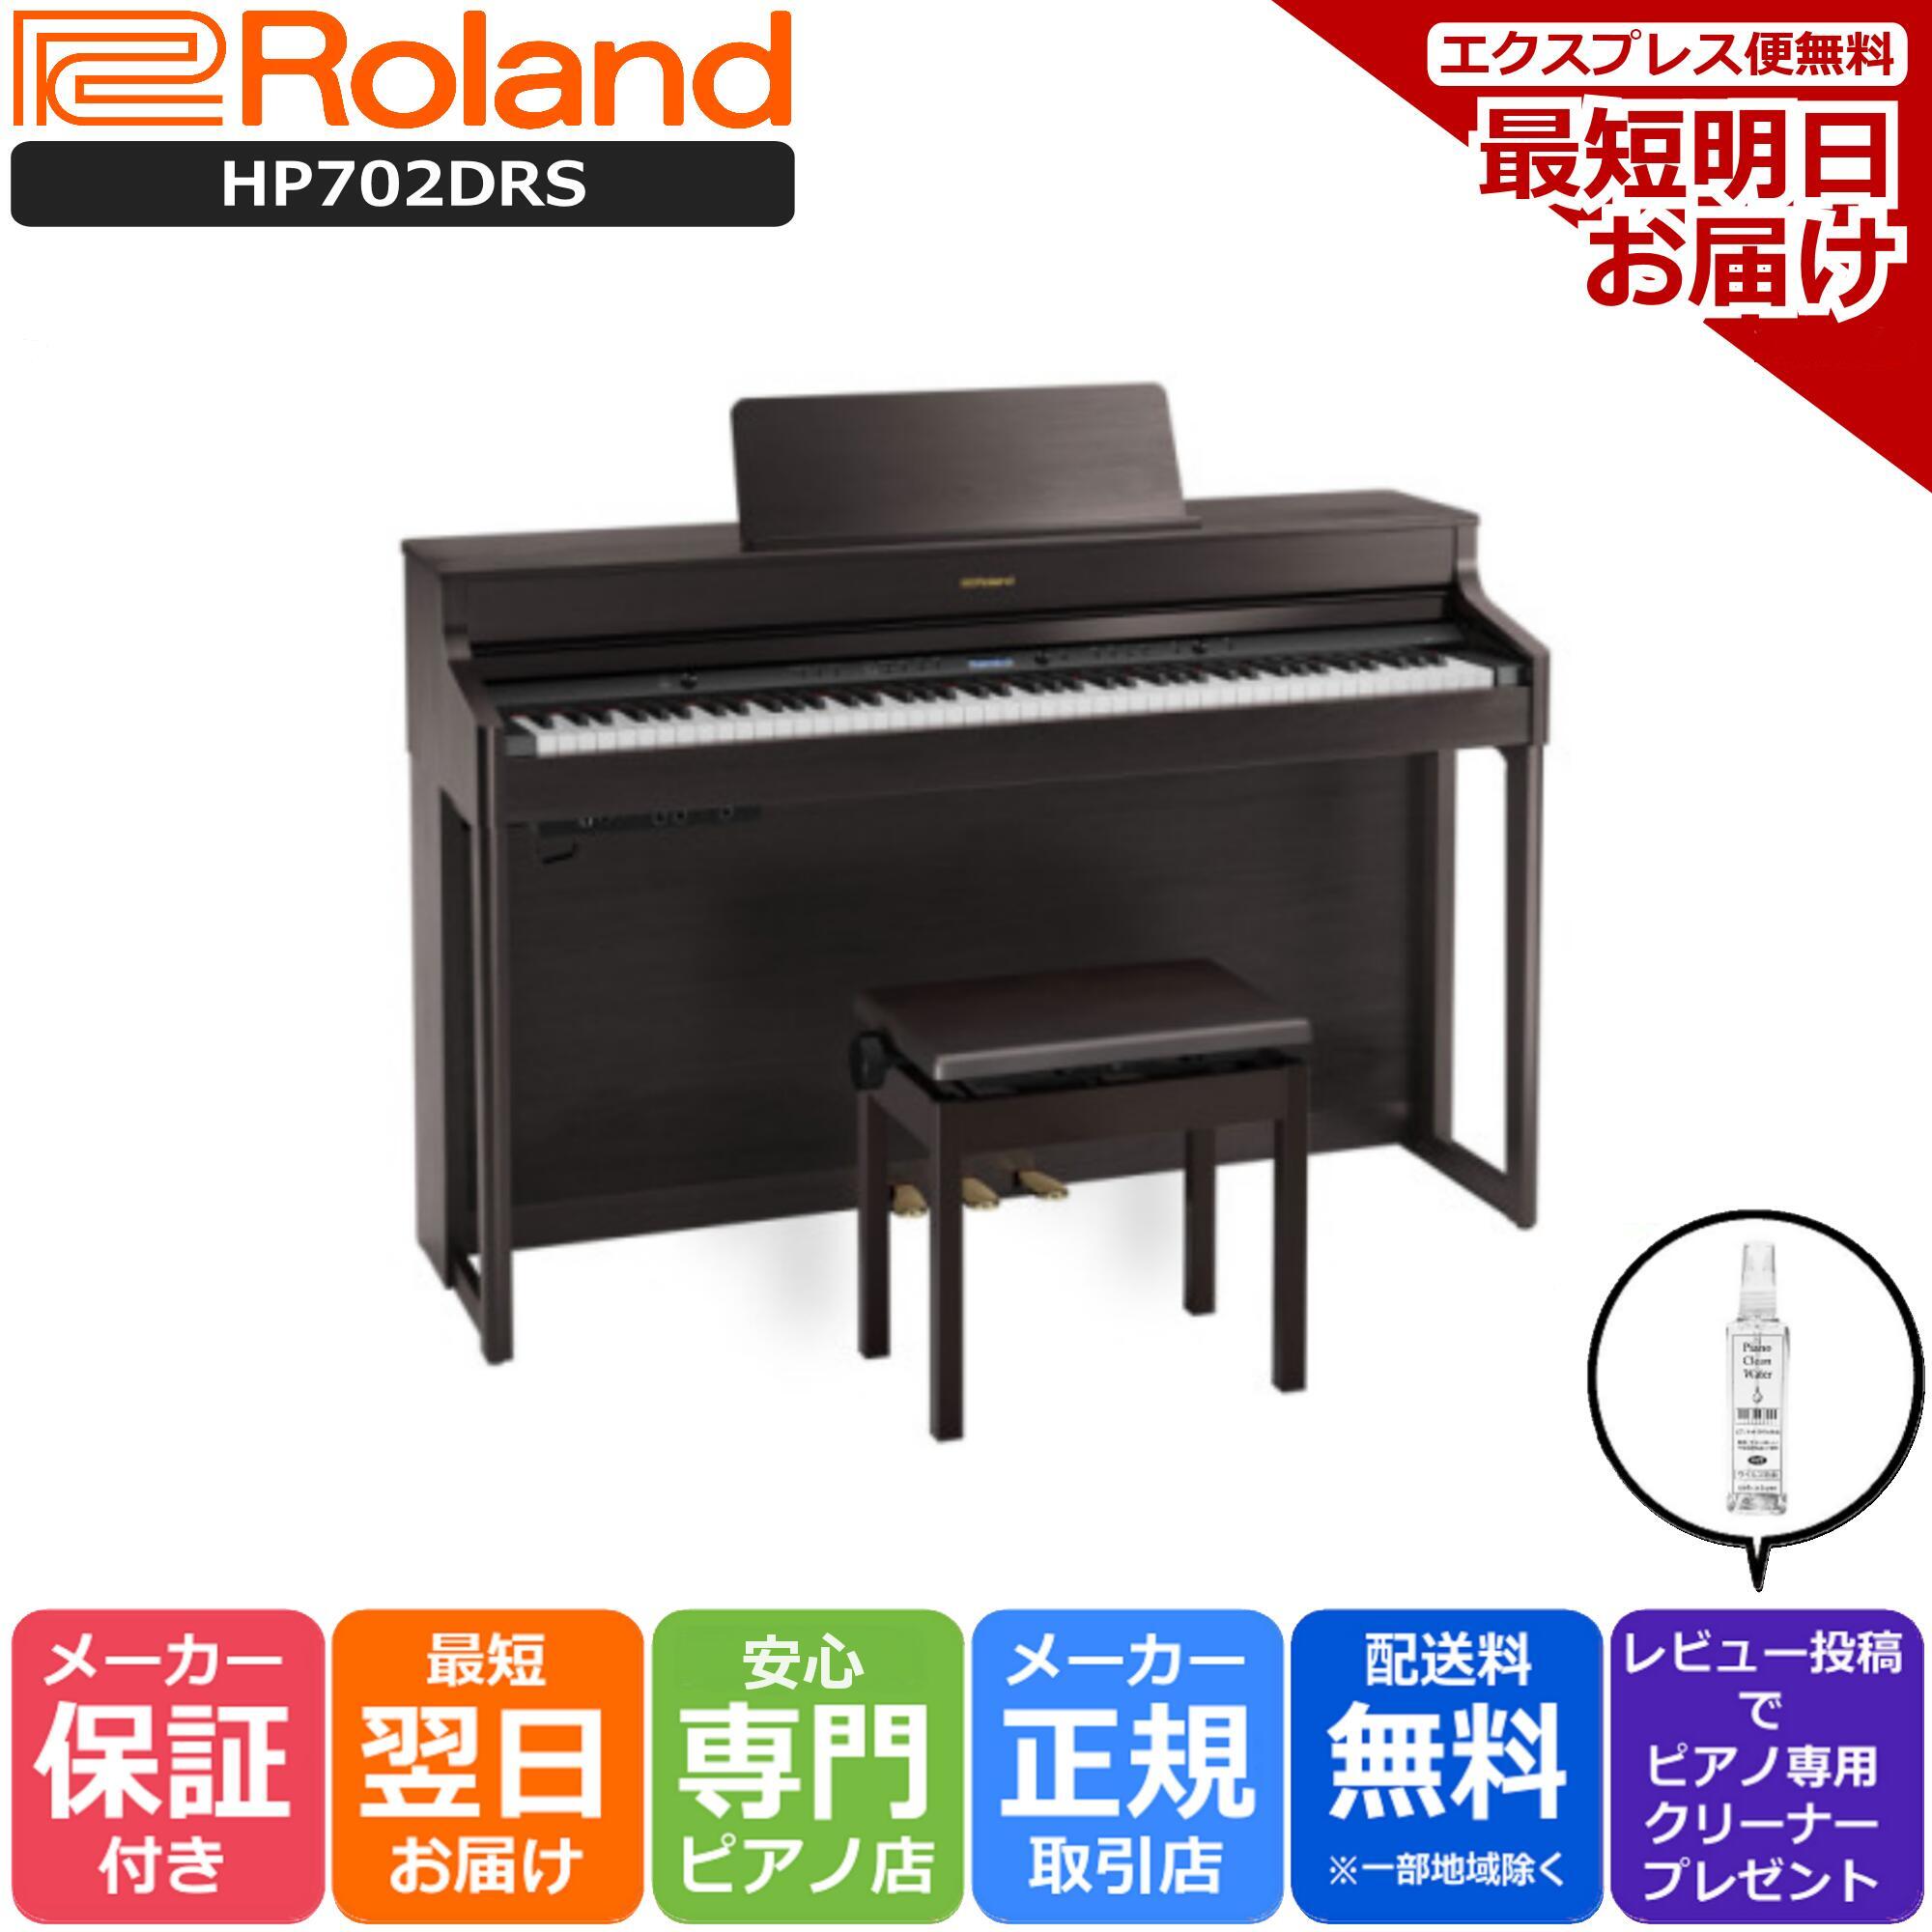 【あす楽対応】【13時までのご注文で即日発送】ローランド Roland HP702 DRS 電子ピアノ ダークローズウッド 【専用…